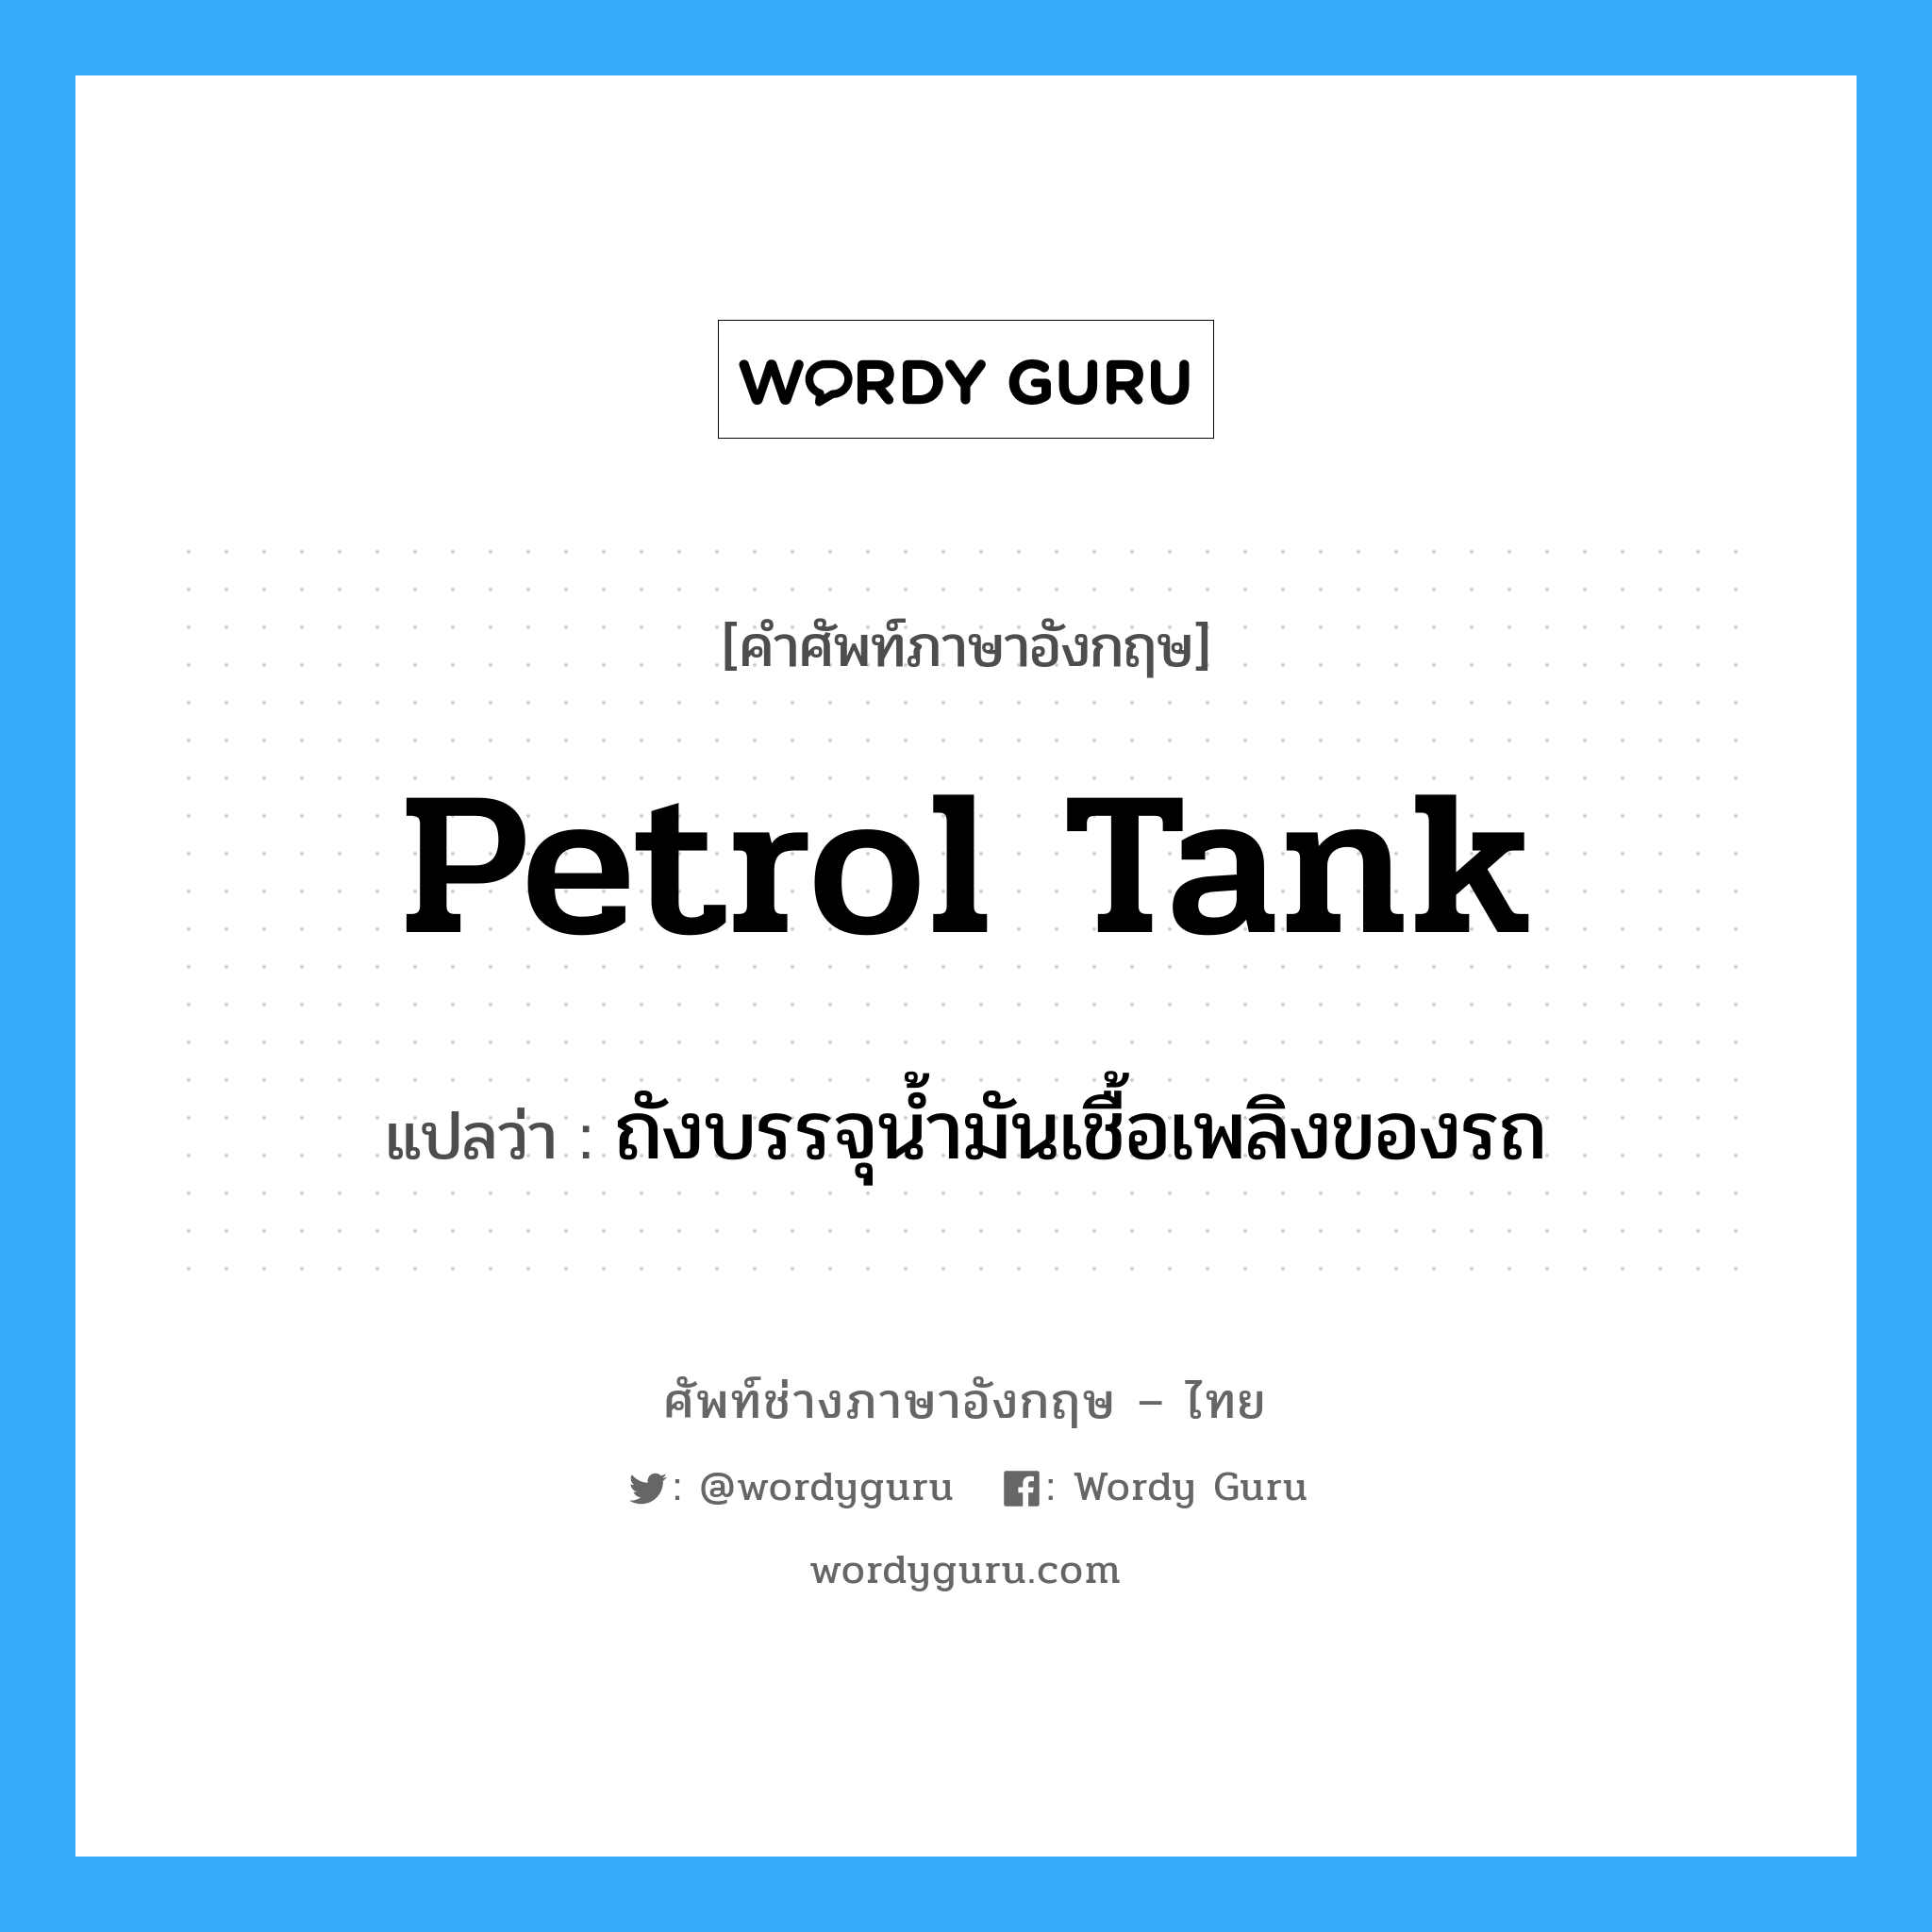 ถังบรรจุน้ำมันเชื้อเพลิงของรถ ภาษาอังกฤษ?, คำศัพท์ช่างภาษาอังกฤษ - ไทย ถังบรรจุน้ำมันเชื้อเพลิงของรถ คำศัพท์ภาษาอังกฤษ ถังบรรจุน้ำมันเชื้อเพลิงของรถ แปลว่า petrol tank